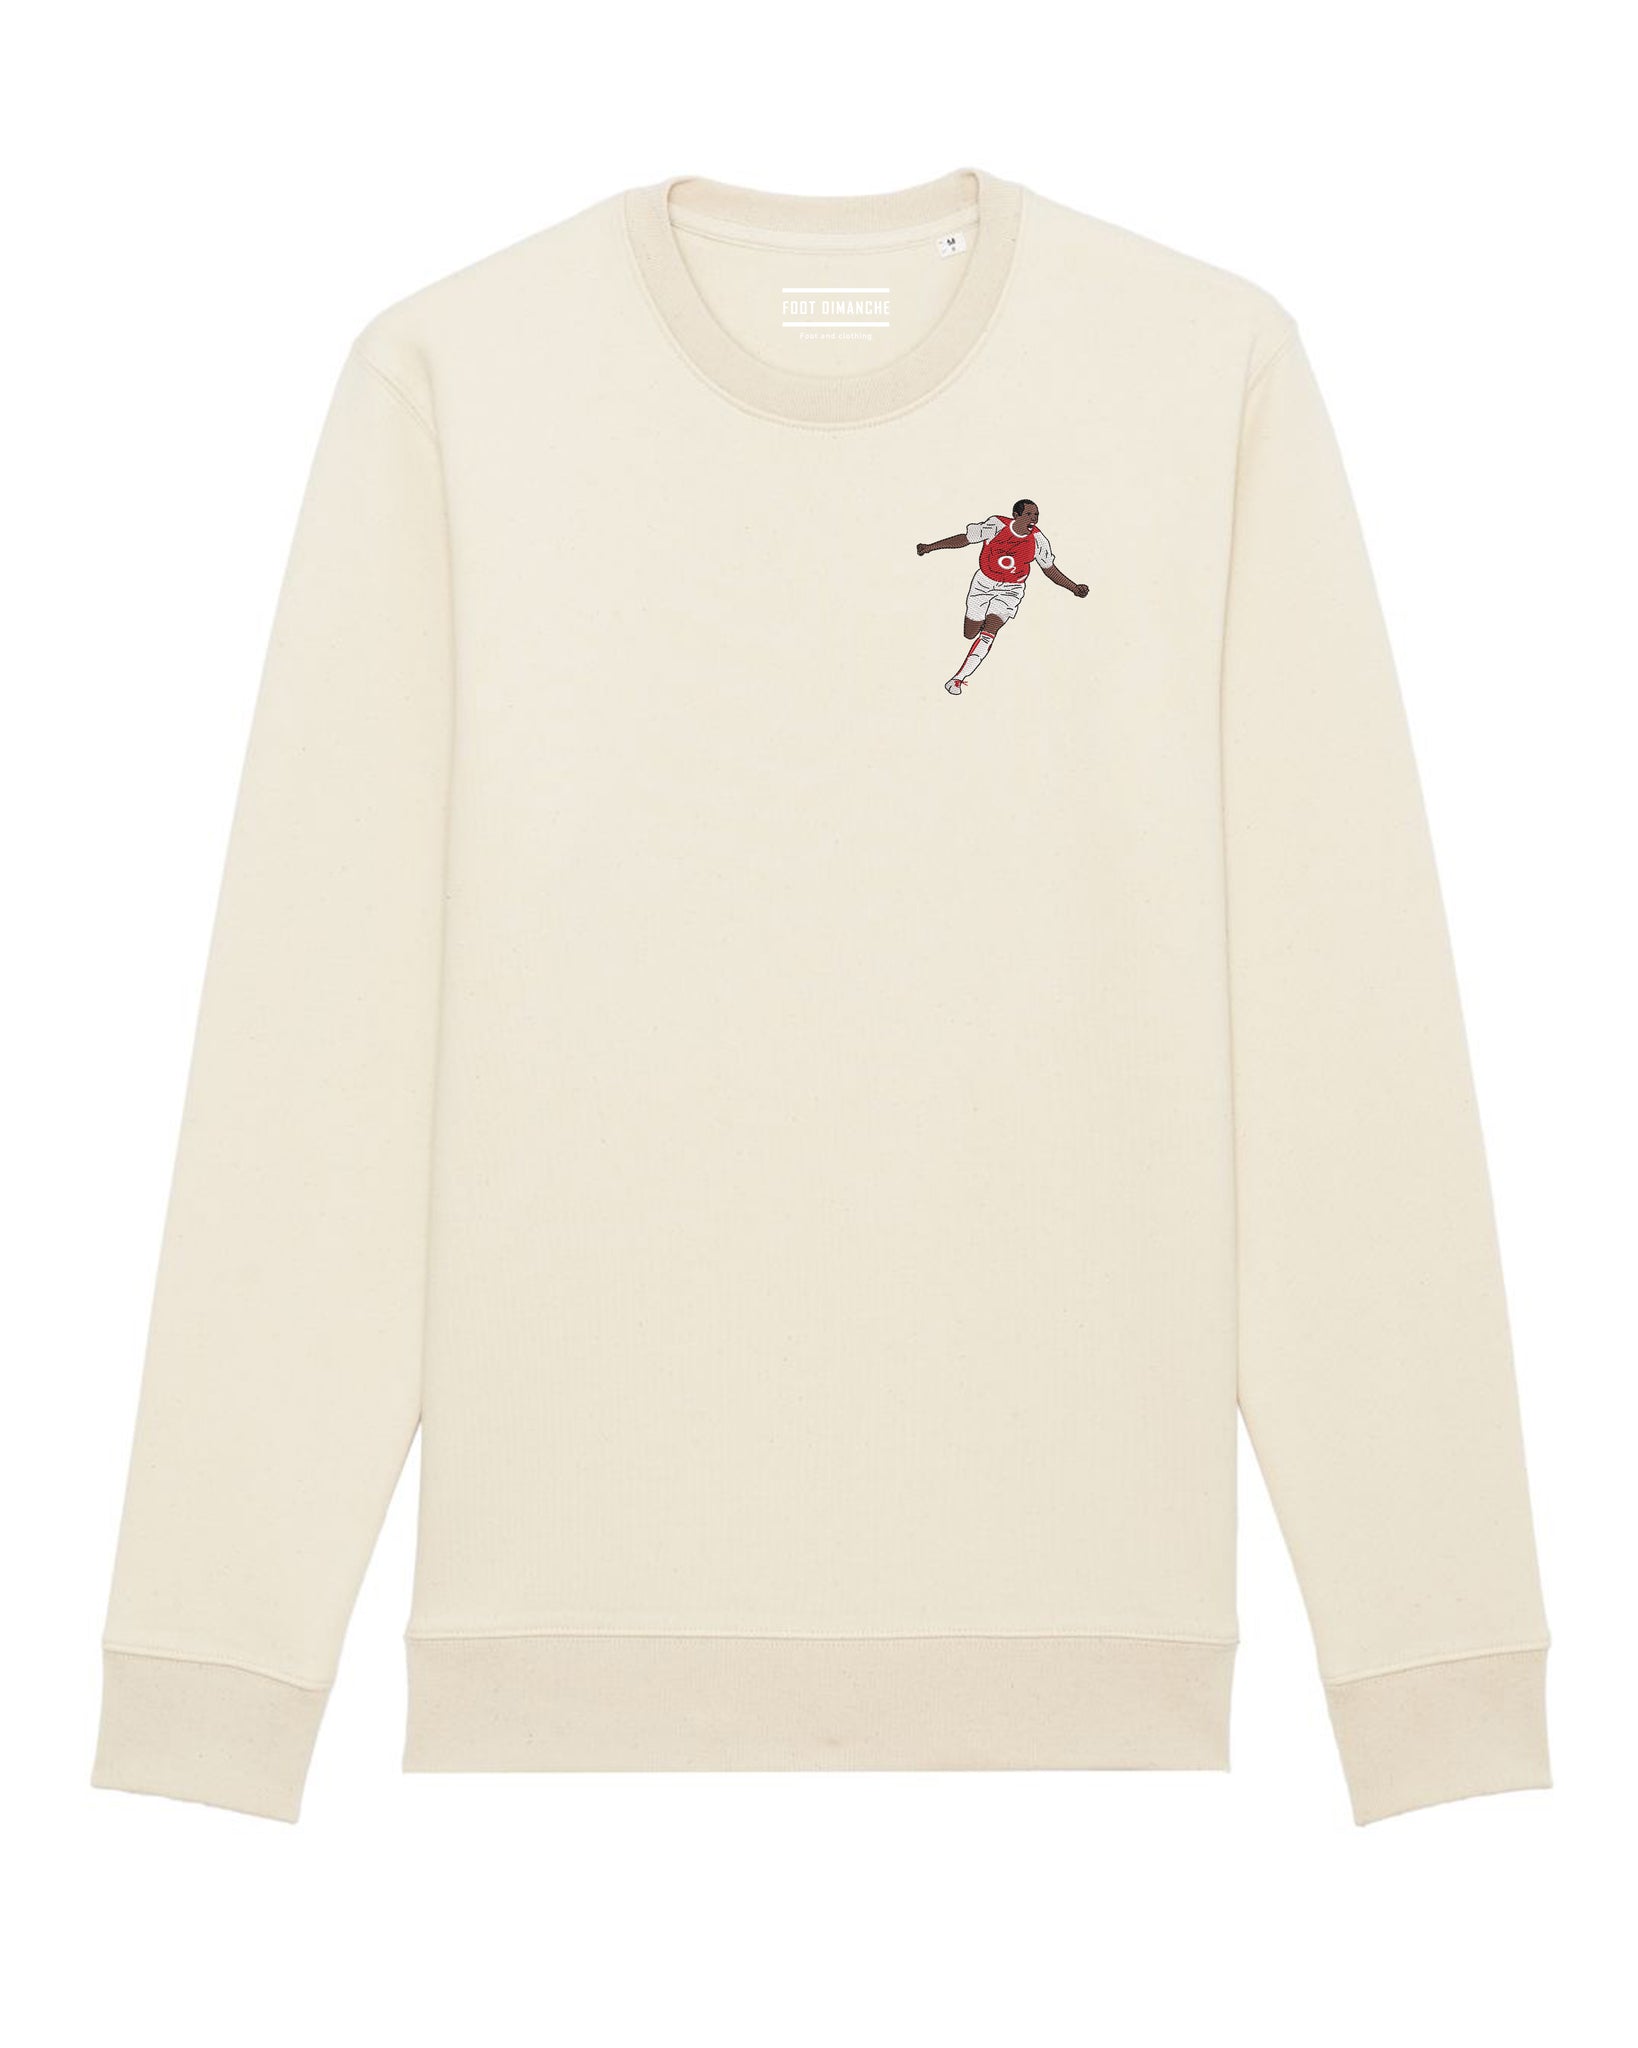 Tweety Gunner embroidered sweatshirt